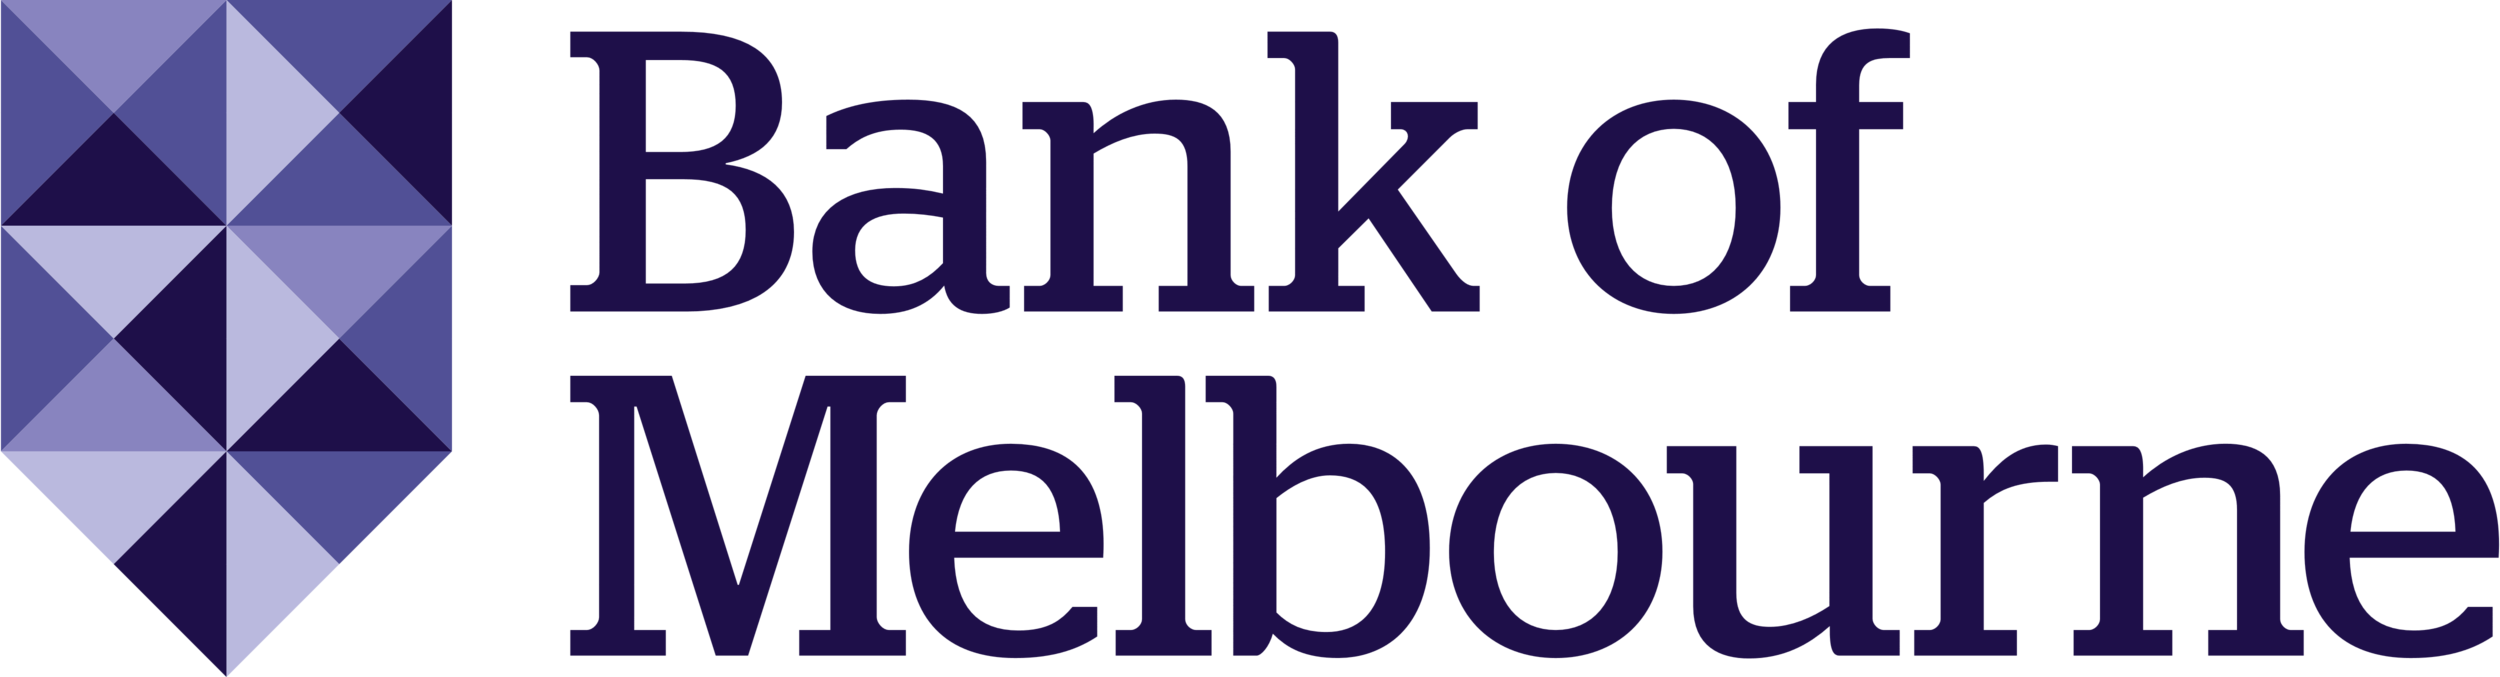 1.Bank_of_Melbourne_logo.png